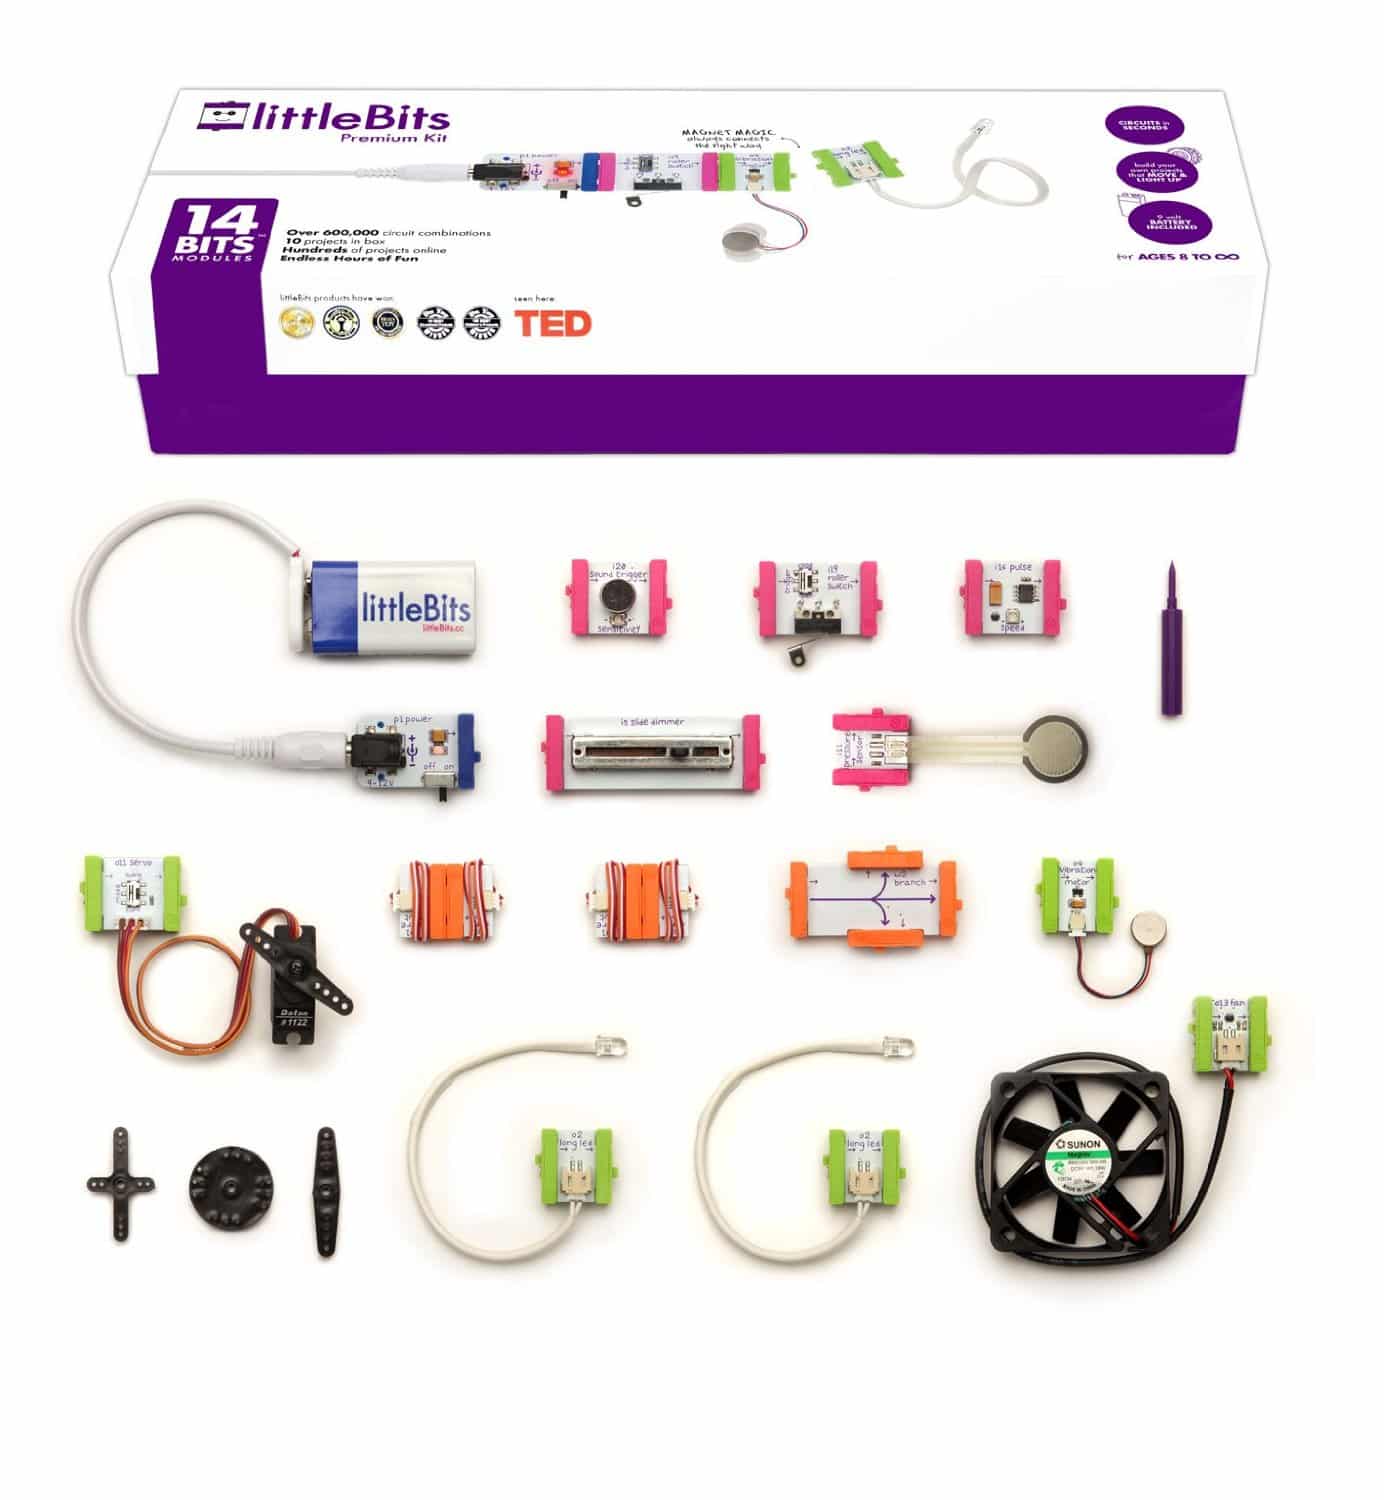 DEAL ALERT: Up to 50% off littleBits